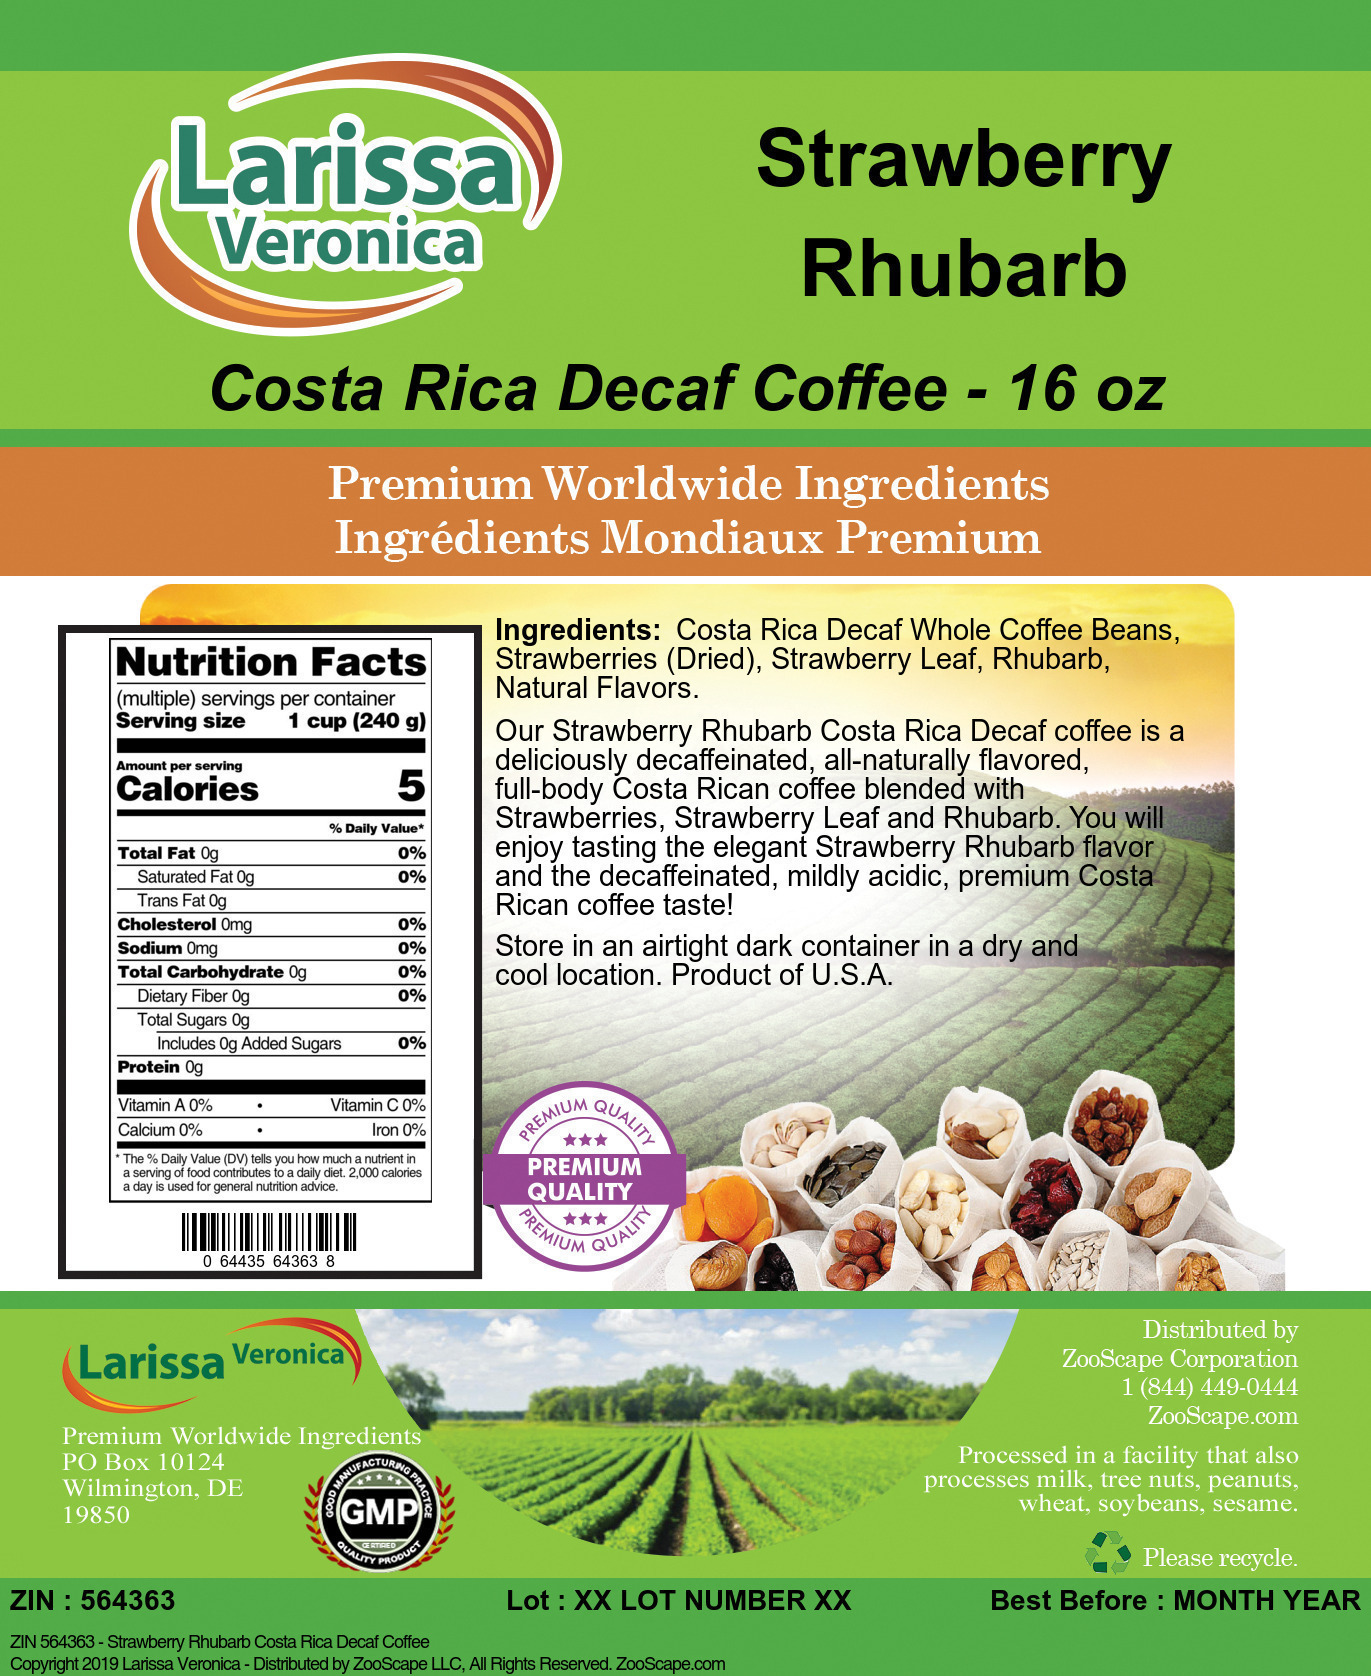 Strawberry Rhubarb Costa Rica Decaf Coffee - Label